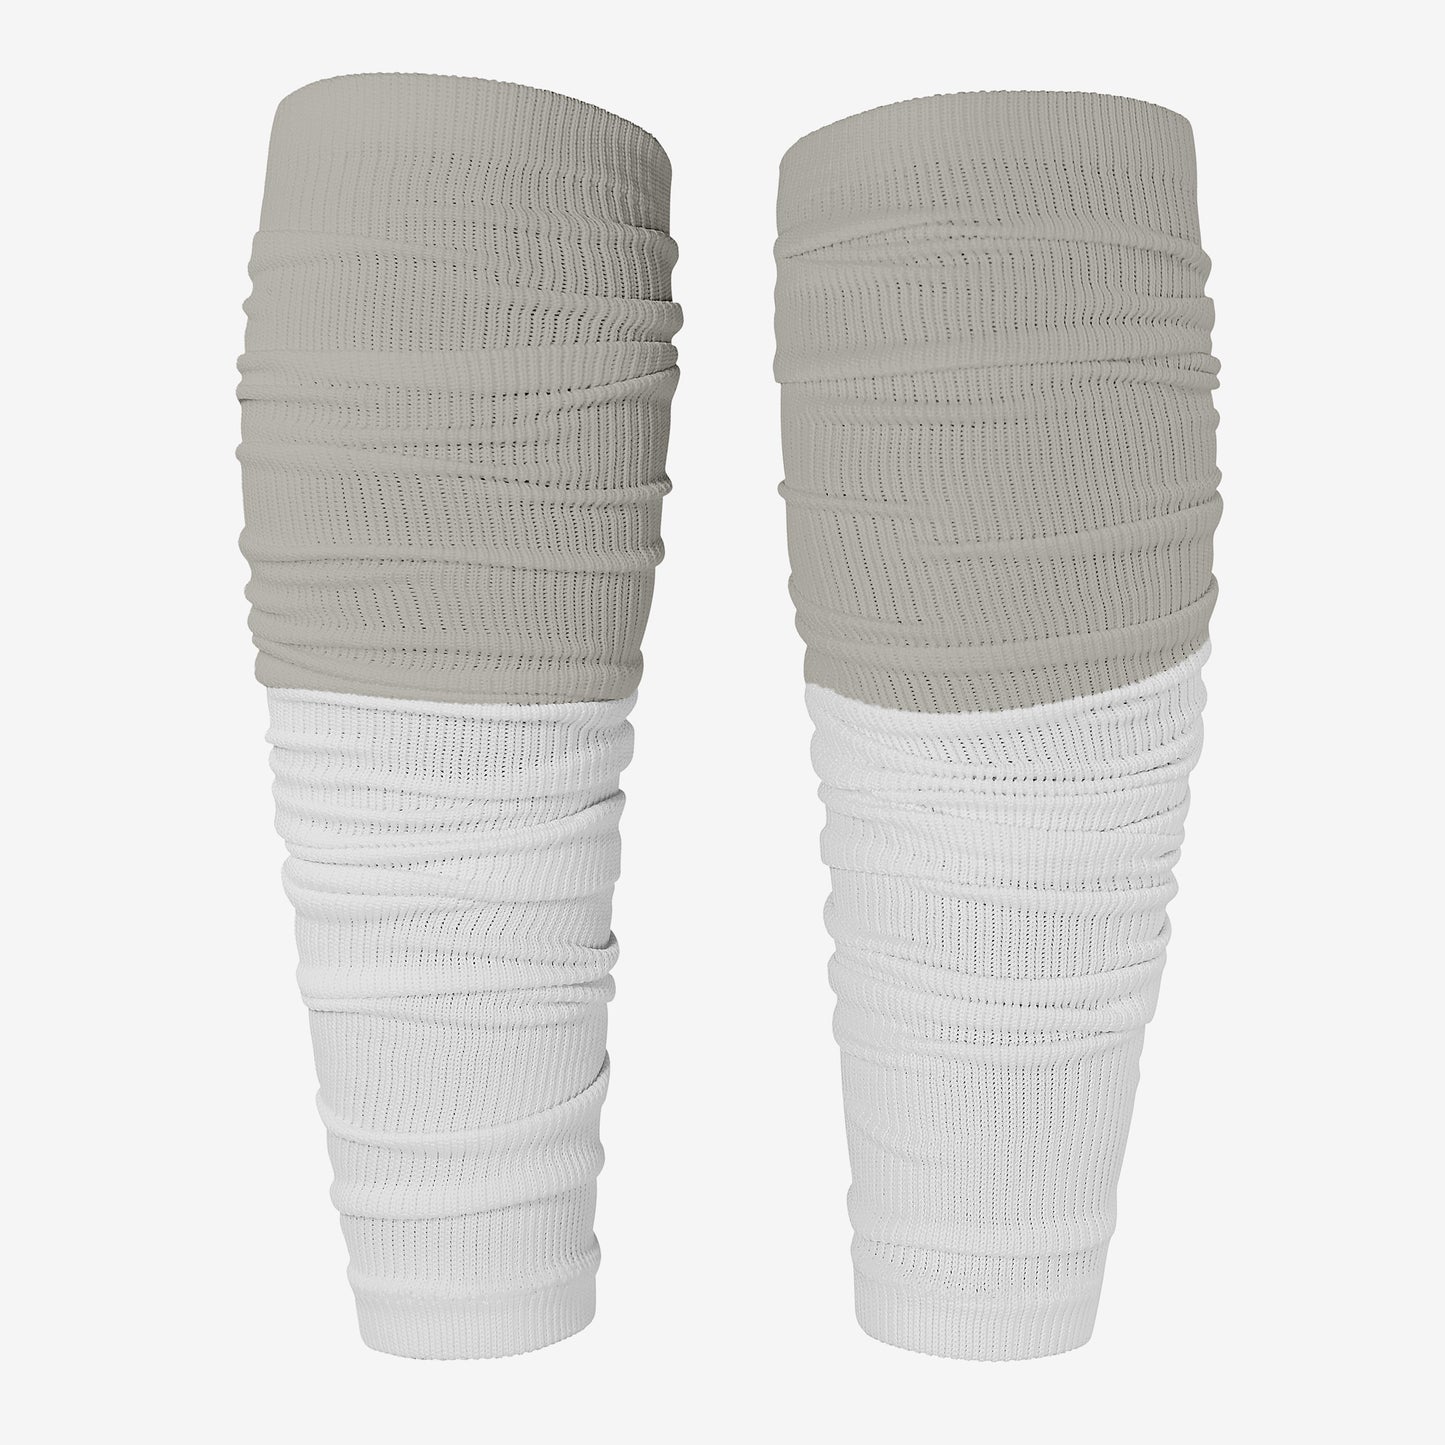 TWO-TONE FOOTBALL LEG SLEEVES 2.0 (GREY/WHITE)